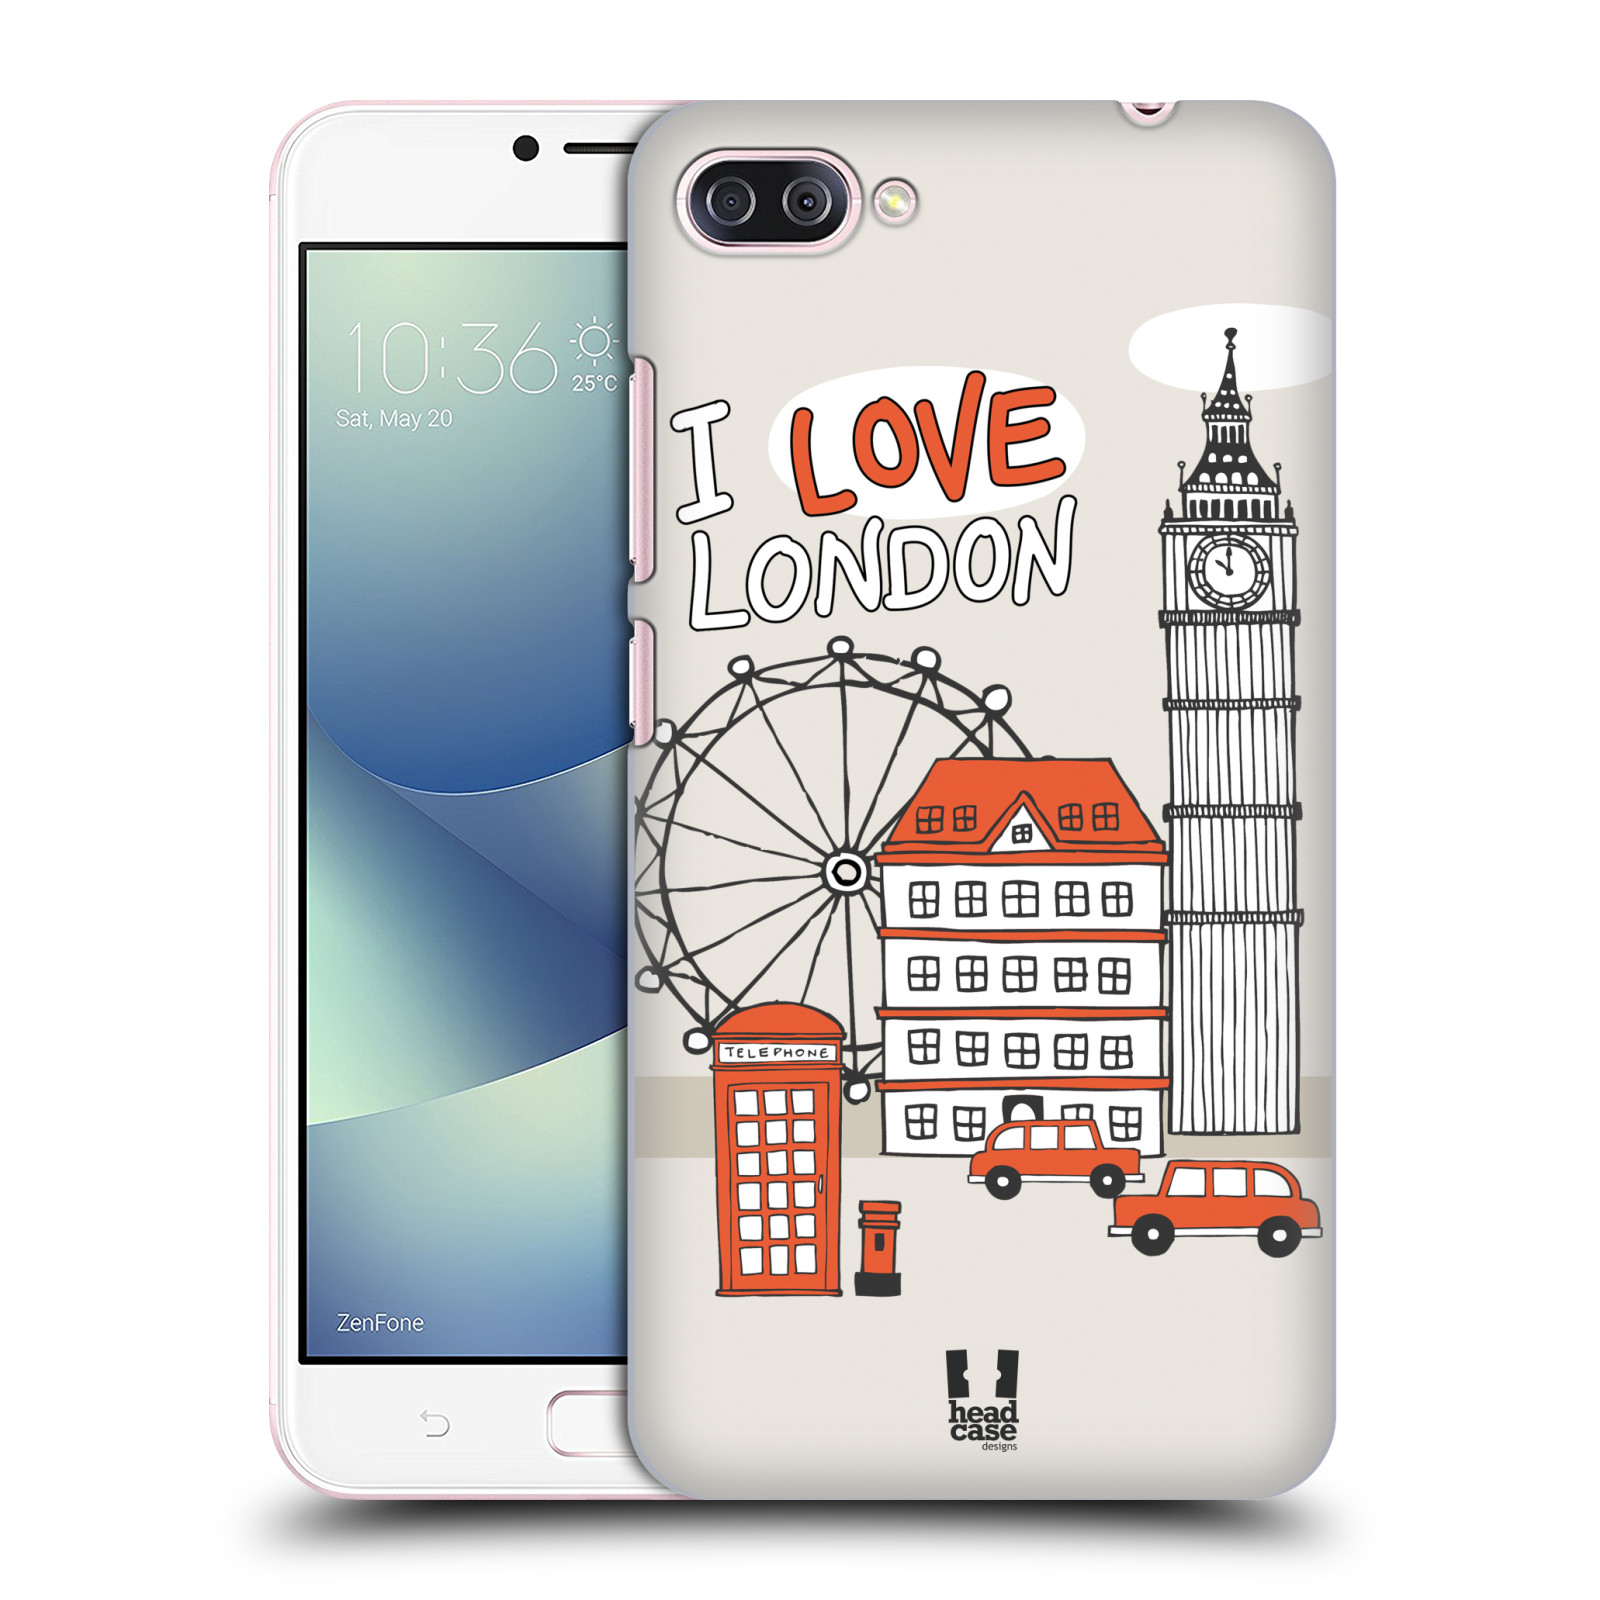 HEAD CASE plastový obal na mobil Asus Zenfone 4 MAX ZC554KL vzor Kreslená městečka ČERVENÁ, Anglie, Londýn, I LOVE LONDON